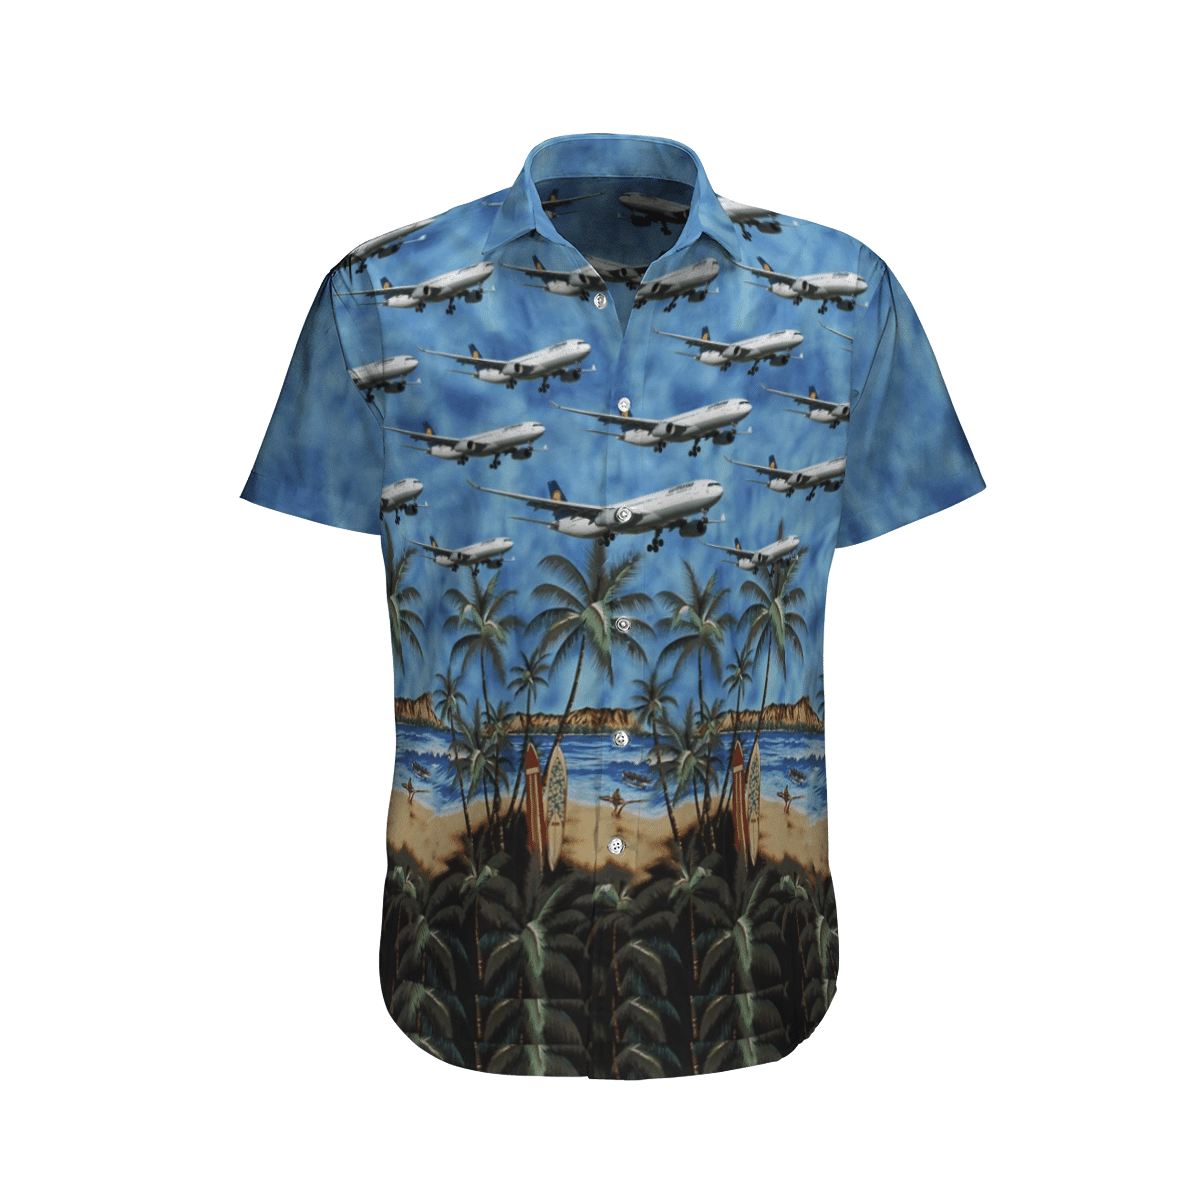 Beautiful Hawaiian shirts for you 234